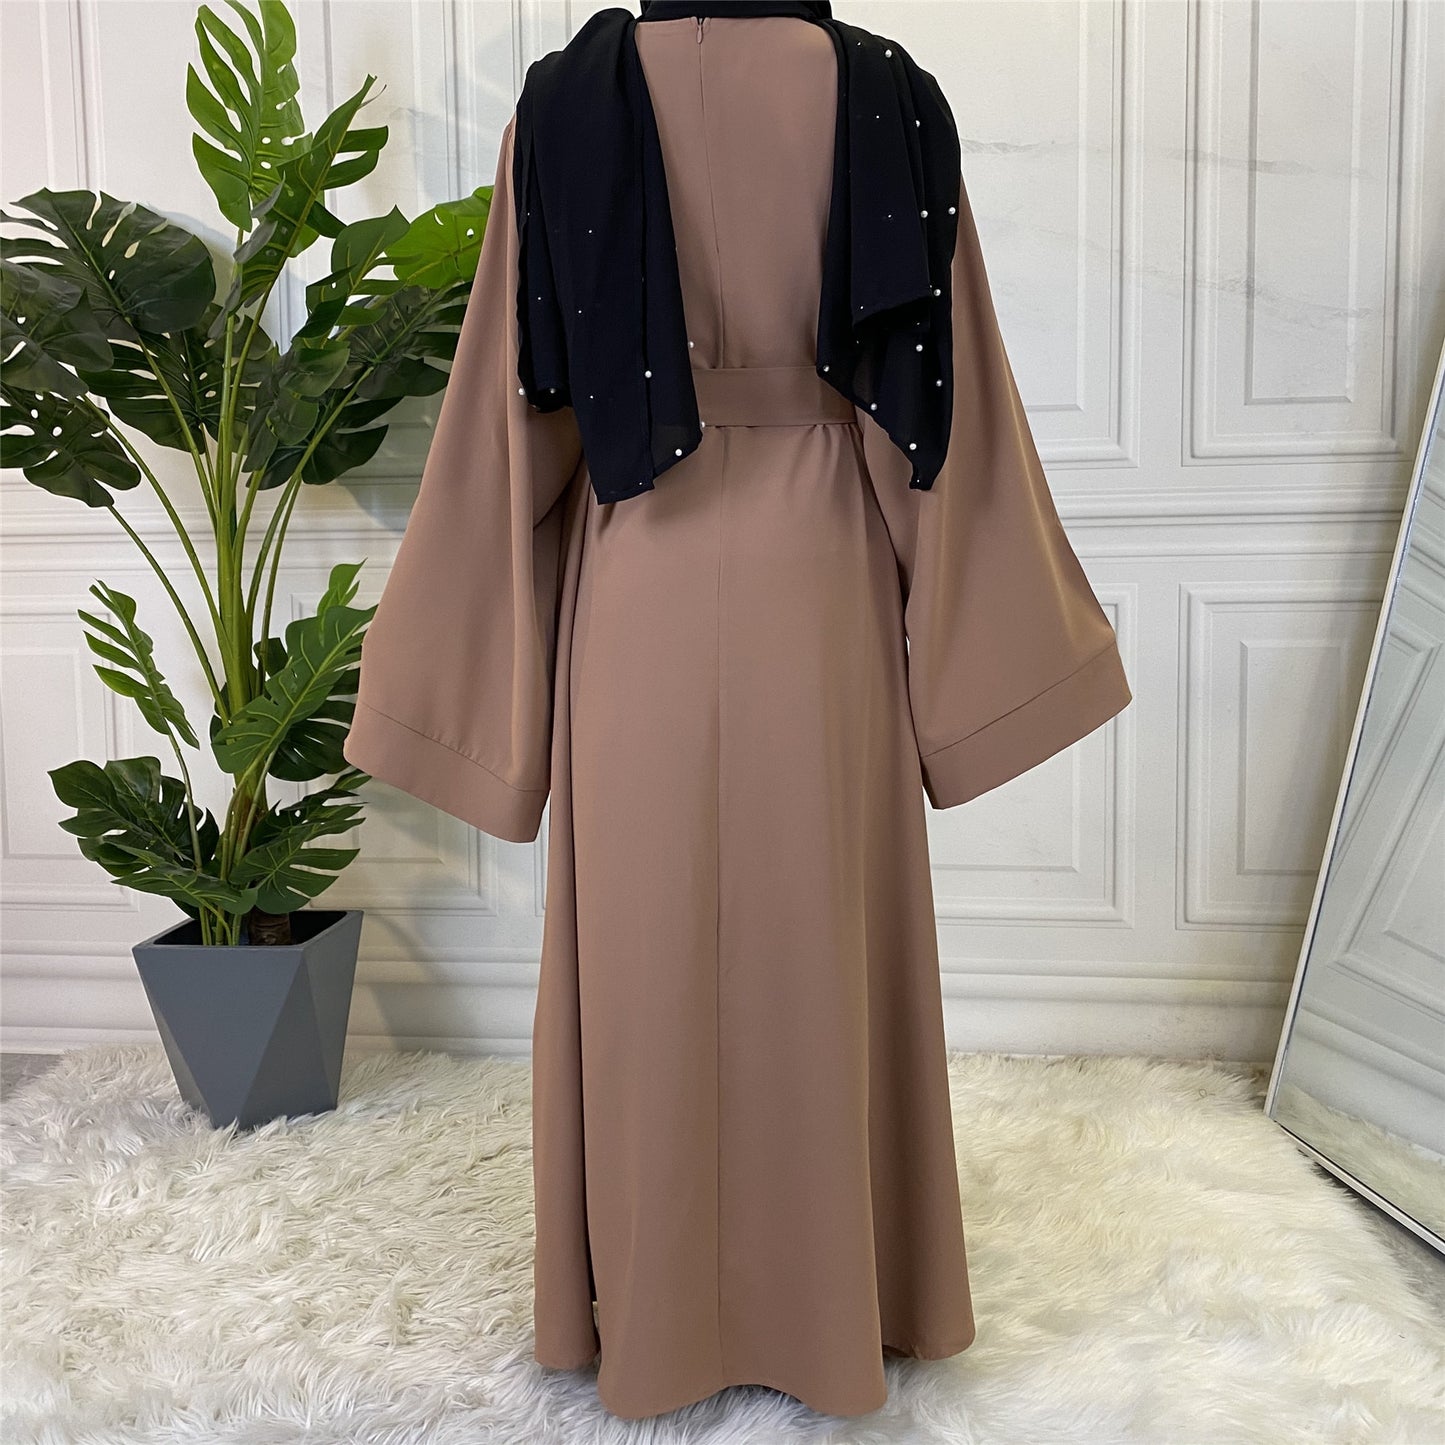 Muslim Fashion Abaya Long Dresses Women With Sashes Islamic Clothing